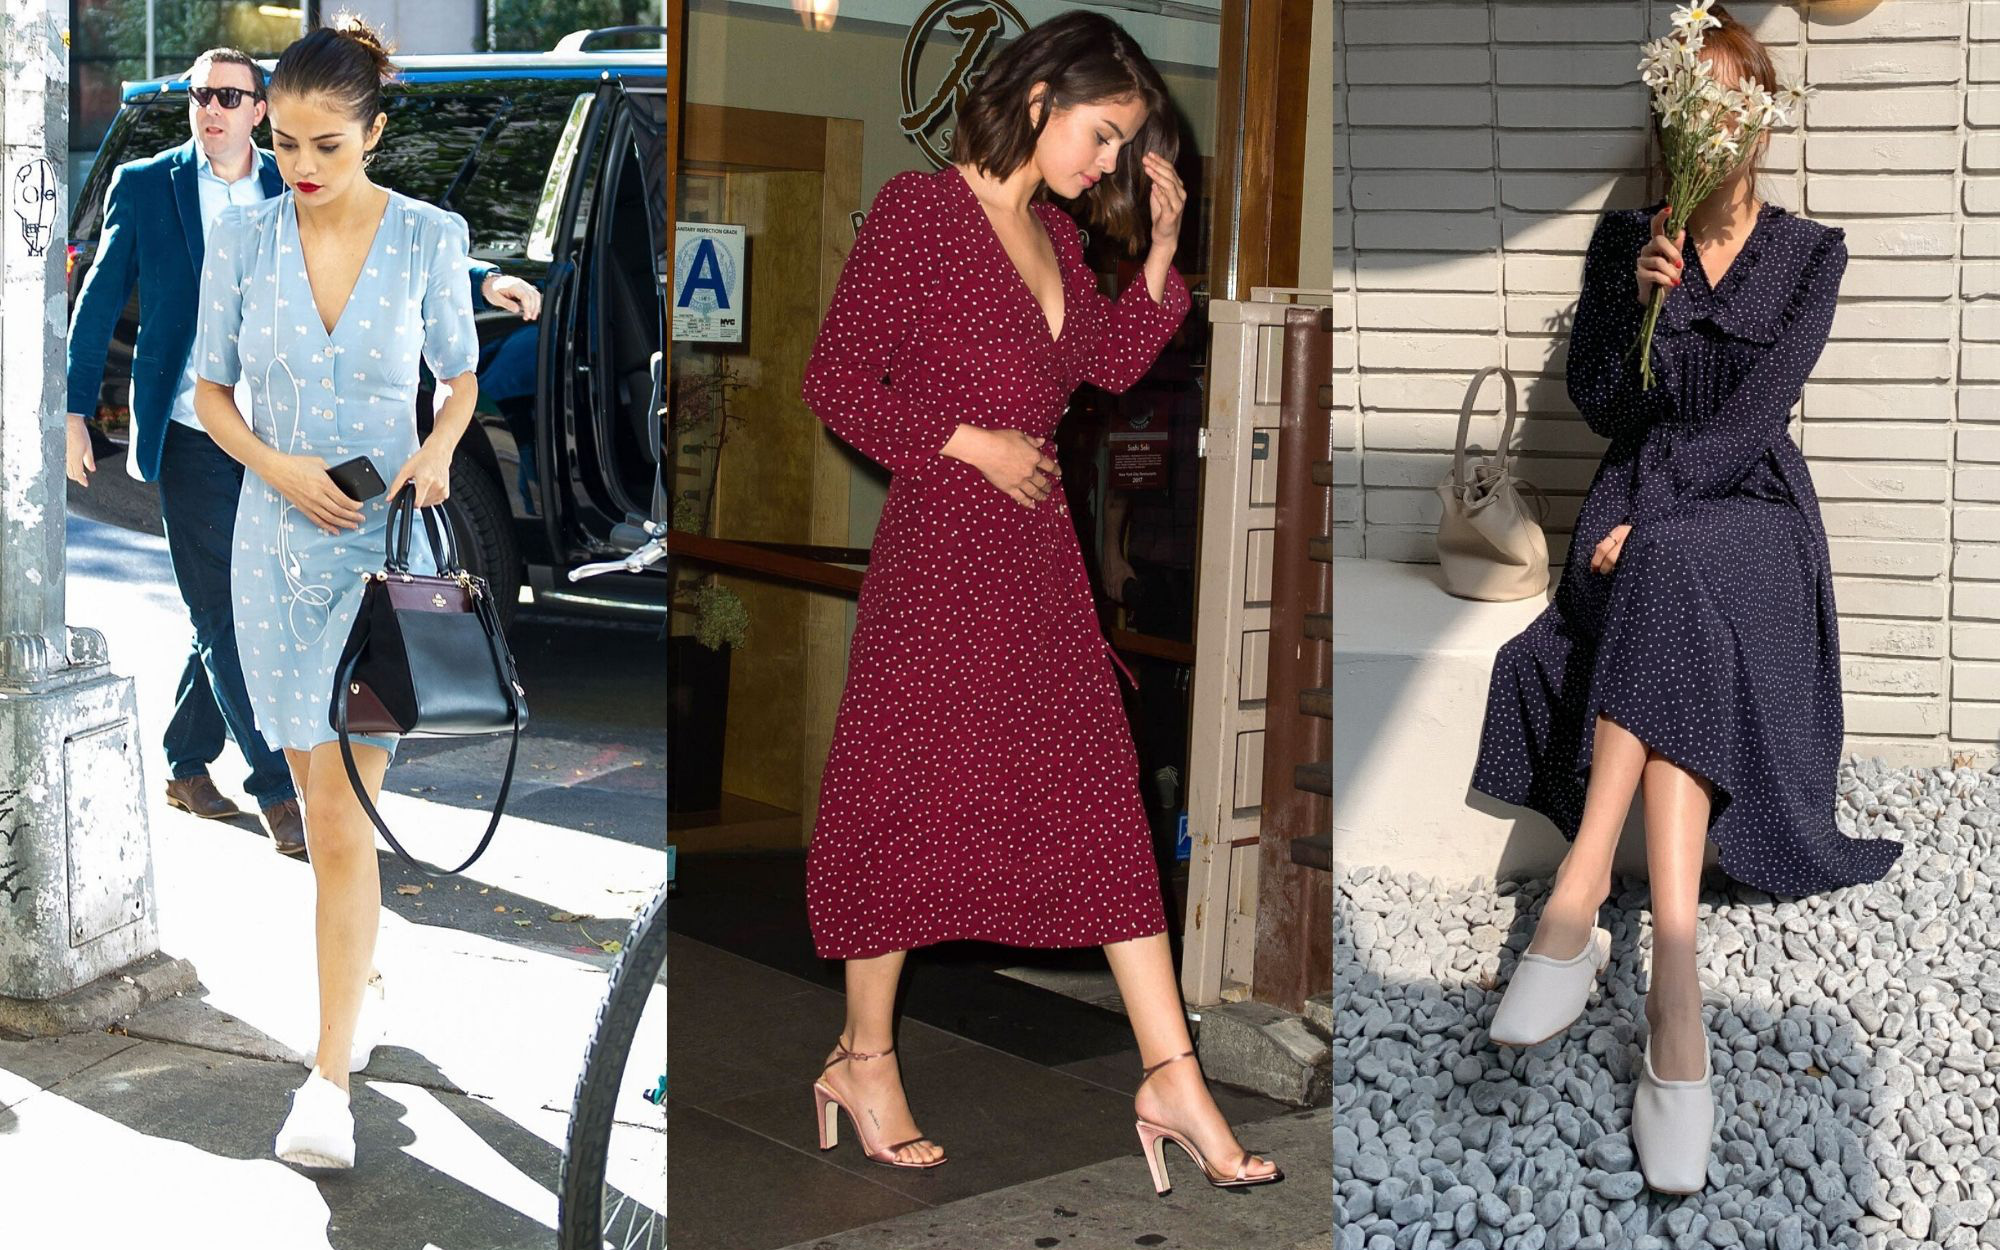 Lấy cảm hứng từ Selena Gomez, bạn sẽ nhận ra không sắm đồ chấm bi thì thiệt thòi cho phong cách quá!